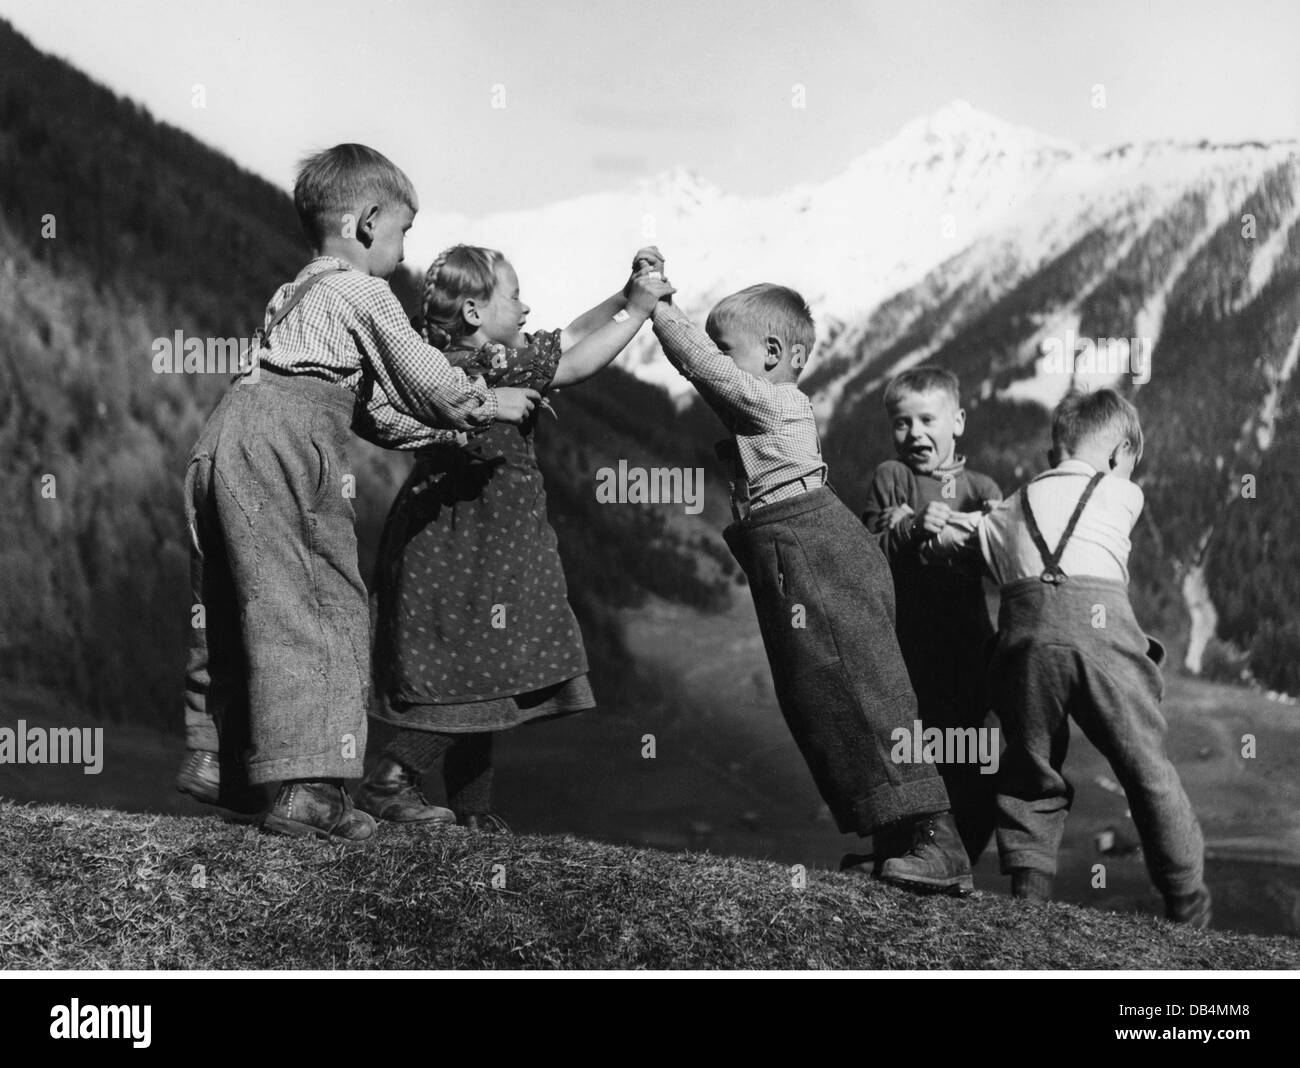 Landwirtschaft, Bergbauern, Gruppe von kleinen Kindern spielen, 1950er Jahre, Zusatz-Rechte-Clearences-nicht vorhanden Stockfoto